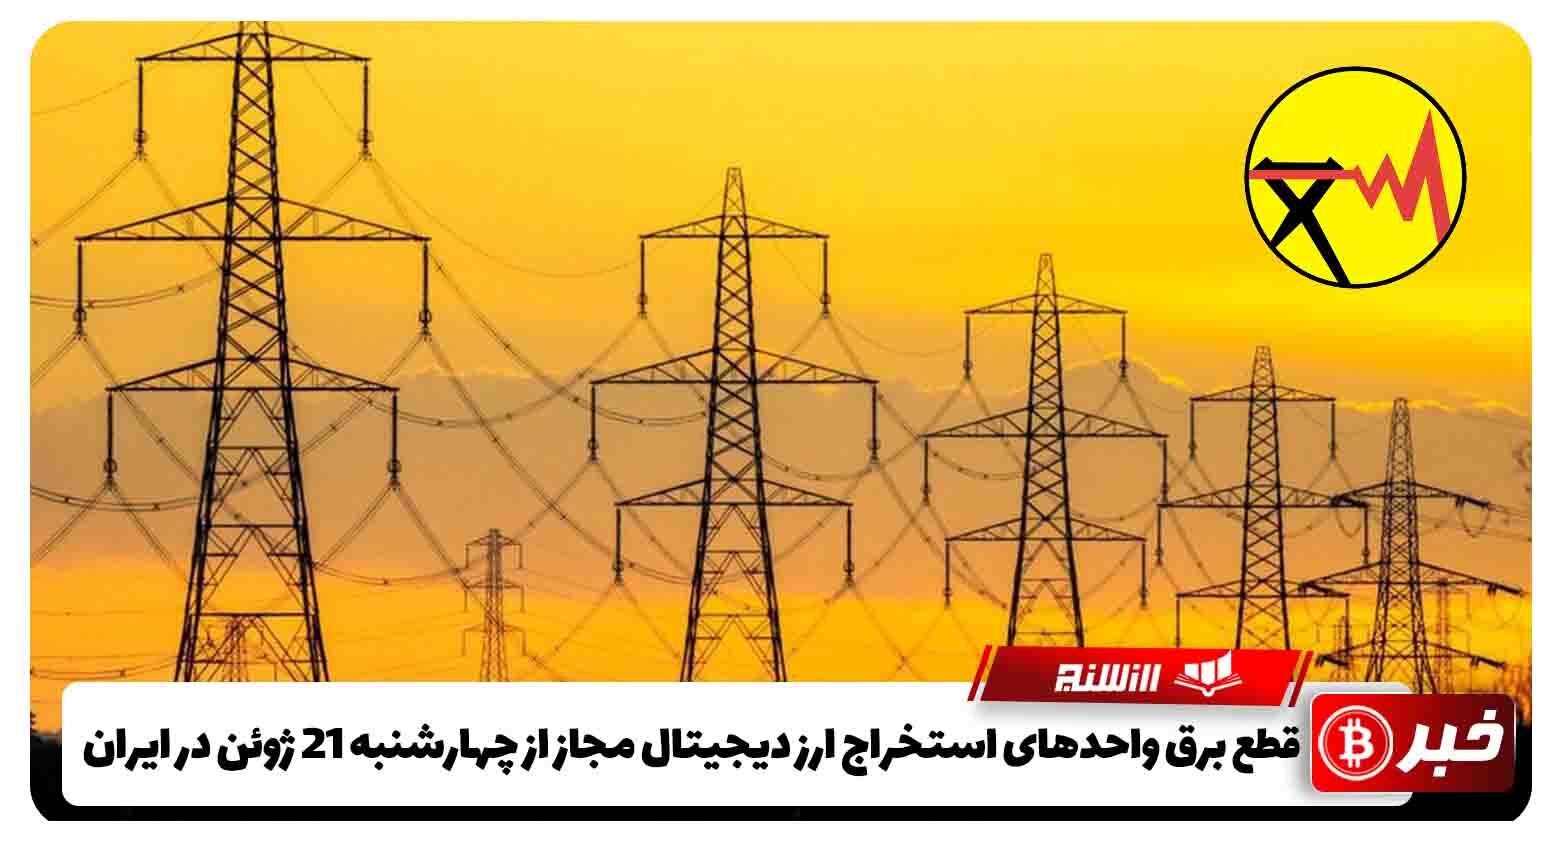 قطع برق واحدهای استخراج ارز دیجیتال مجاز از چهارشنبه 21 ژوئن در ایران